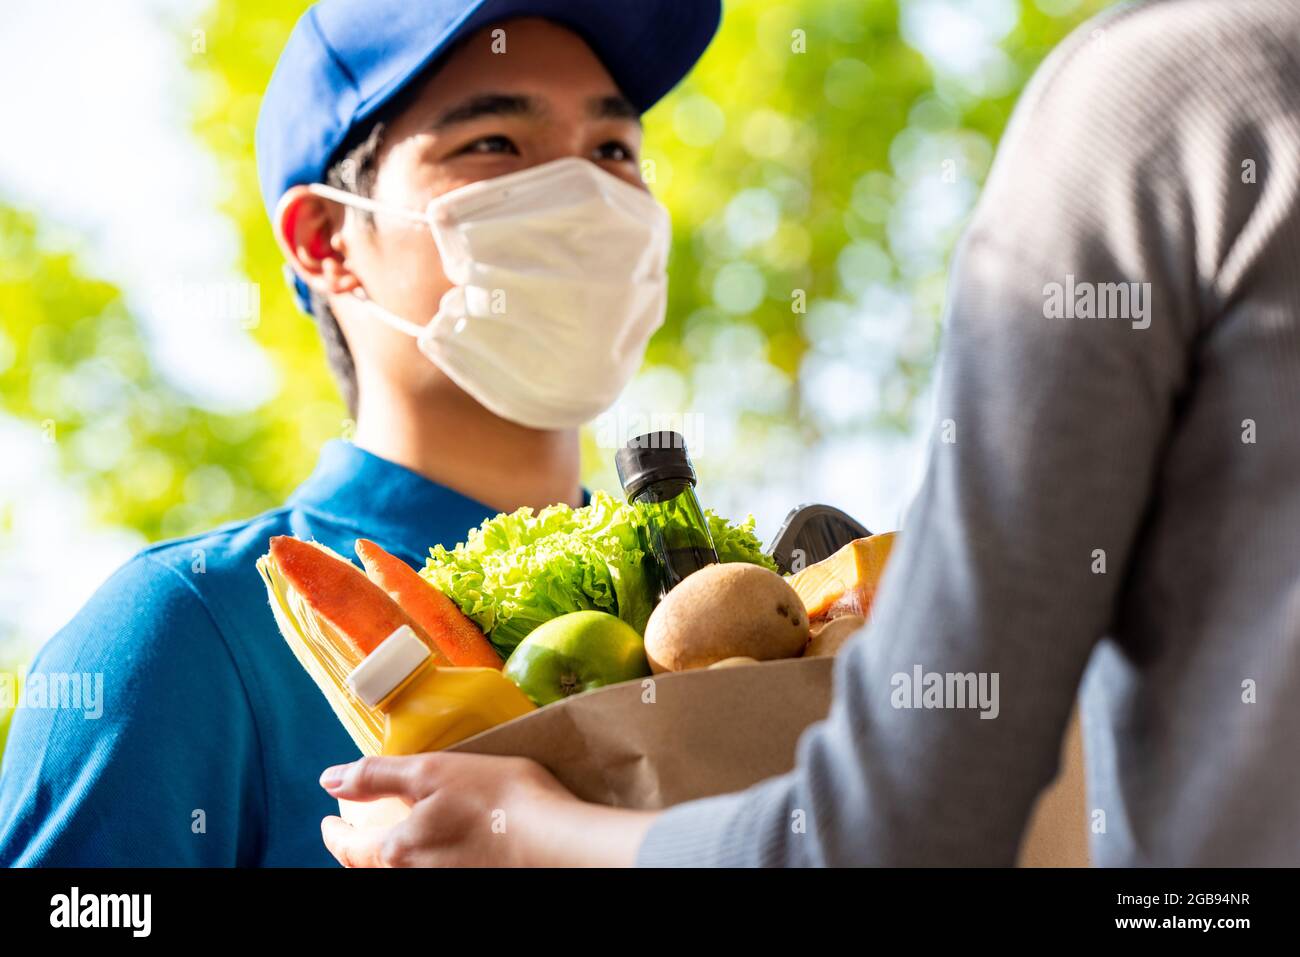 El distribuidor asiático higiénico lleva mascarilla mientras entrega alimentos al cliente en casa, entrega de alimentos en el momento del concepto de pandemia Foto de stock